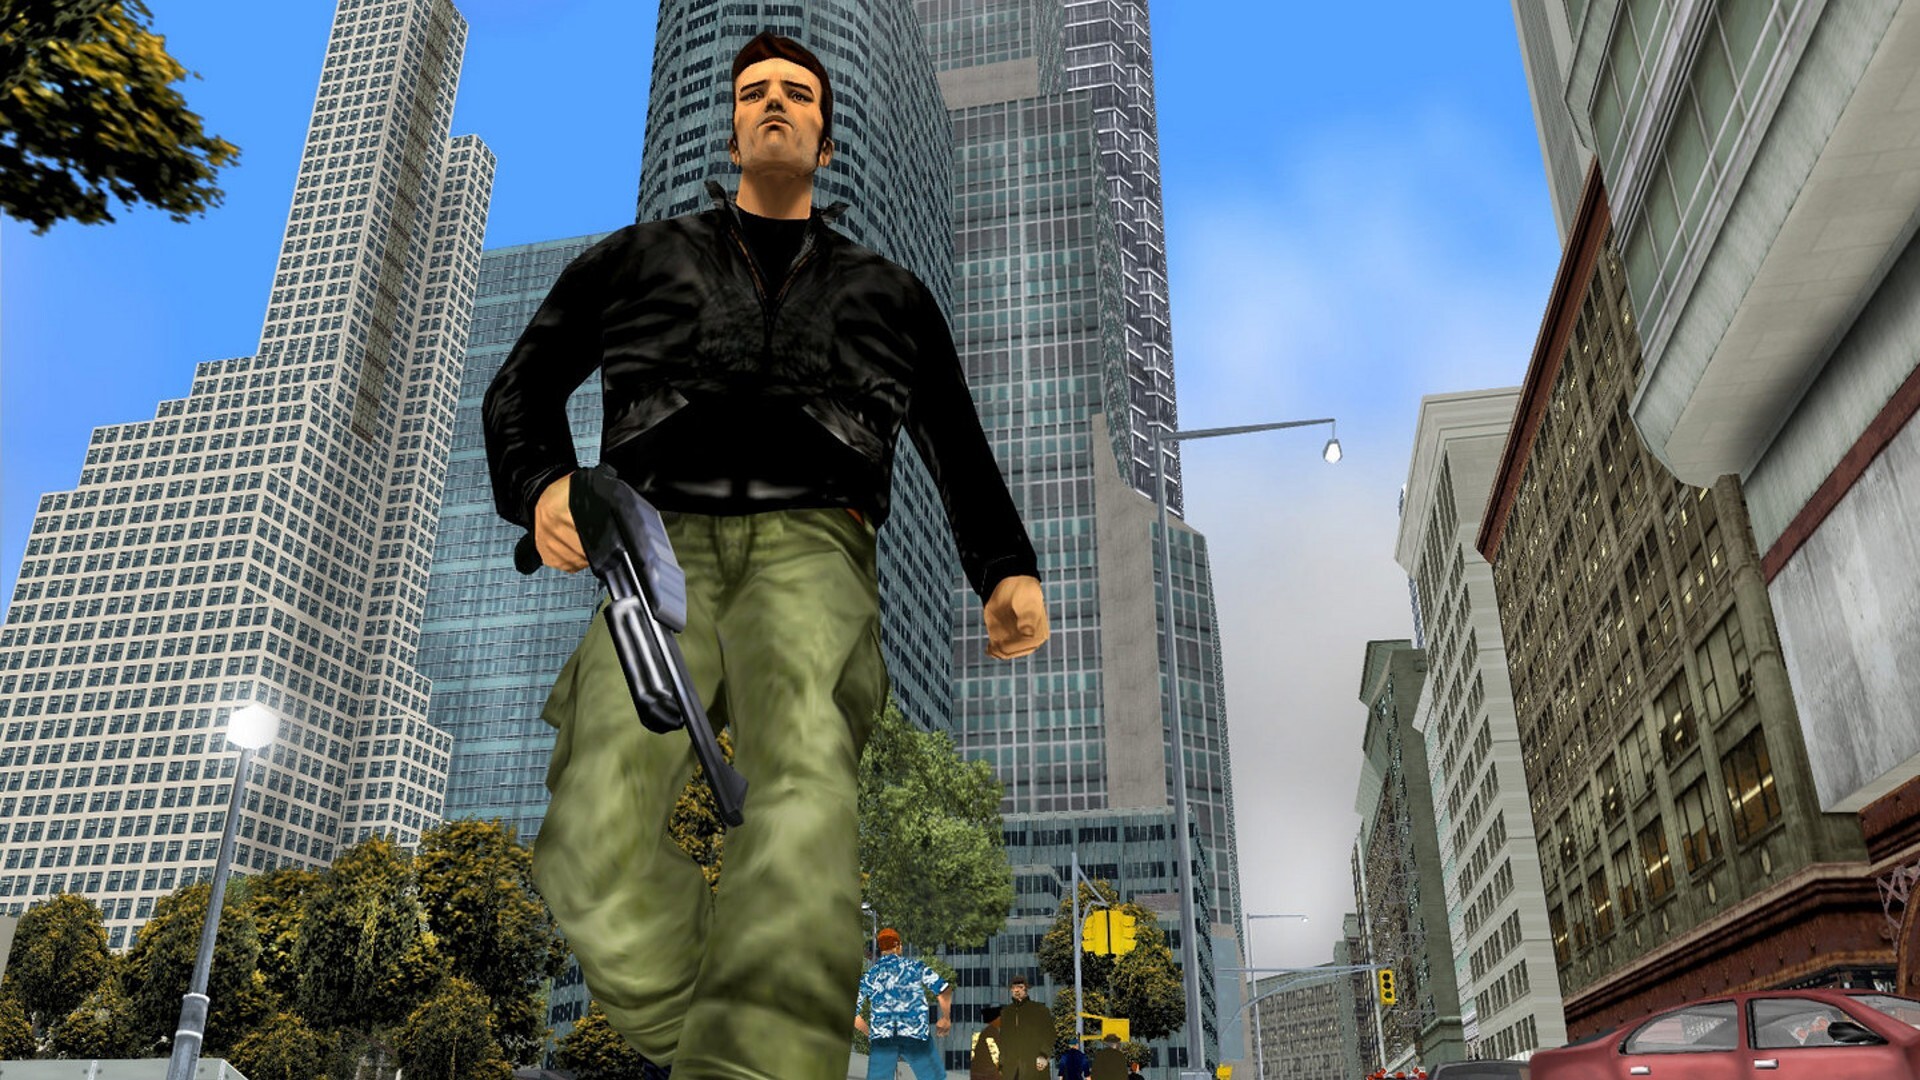 Grand Theft Auto III - Xbox, Xbox